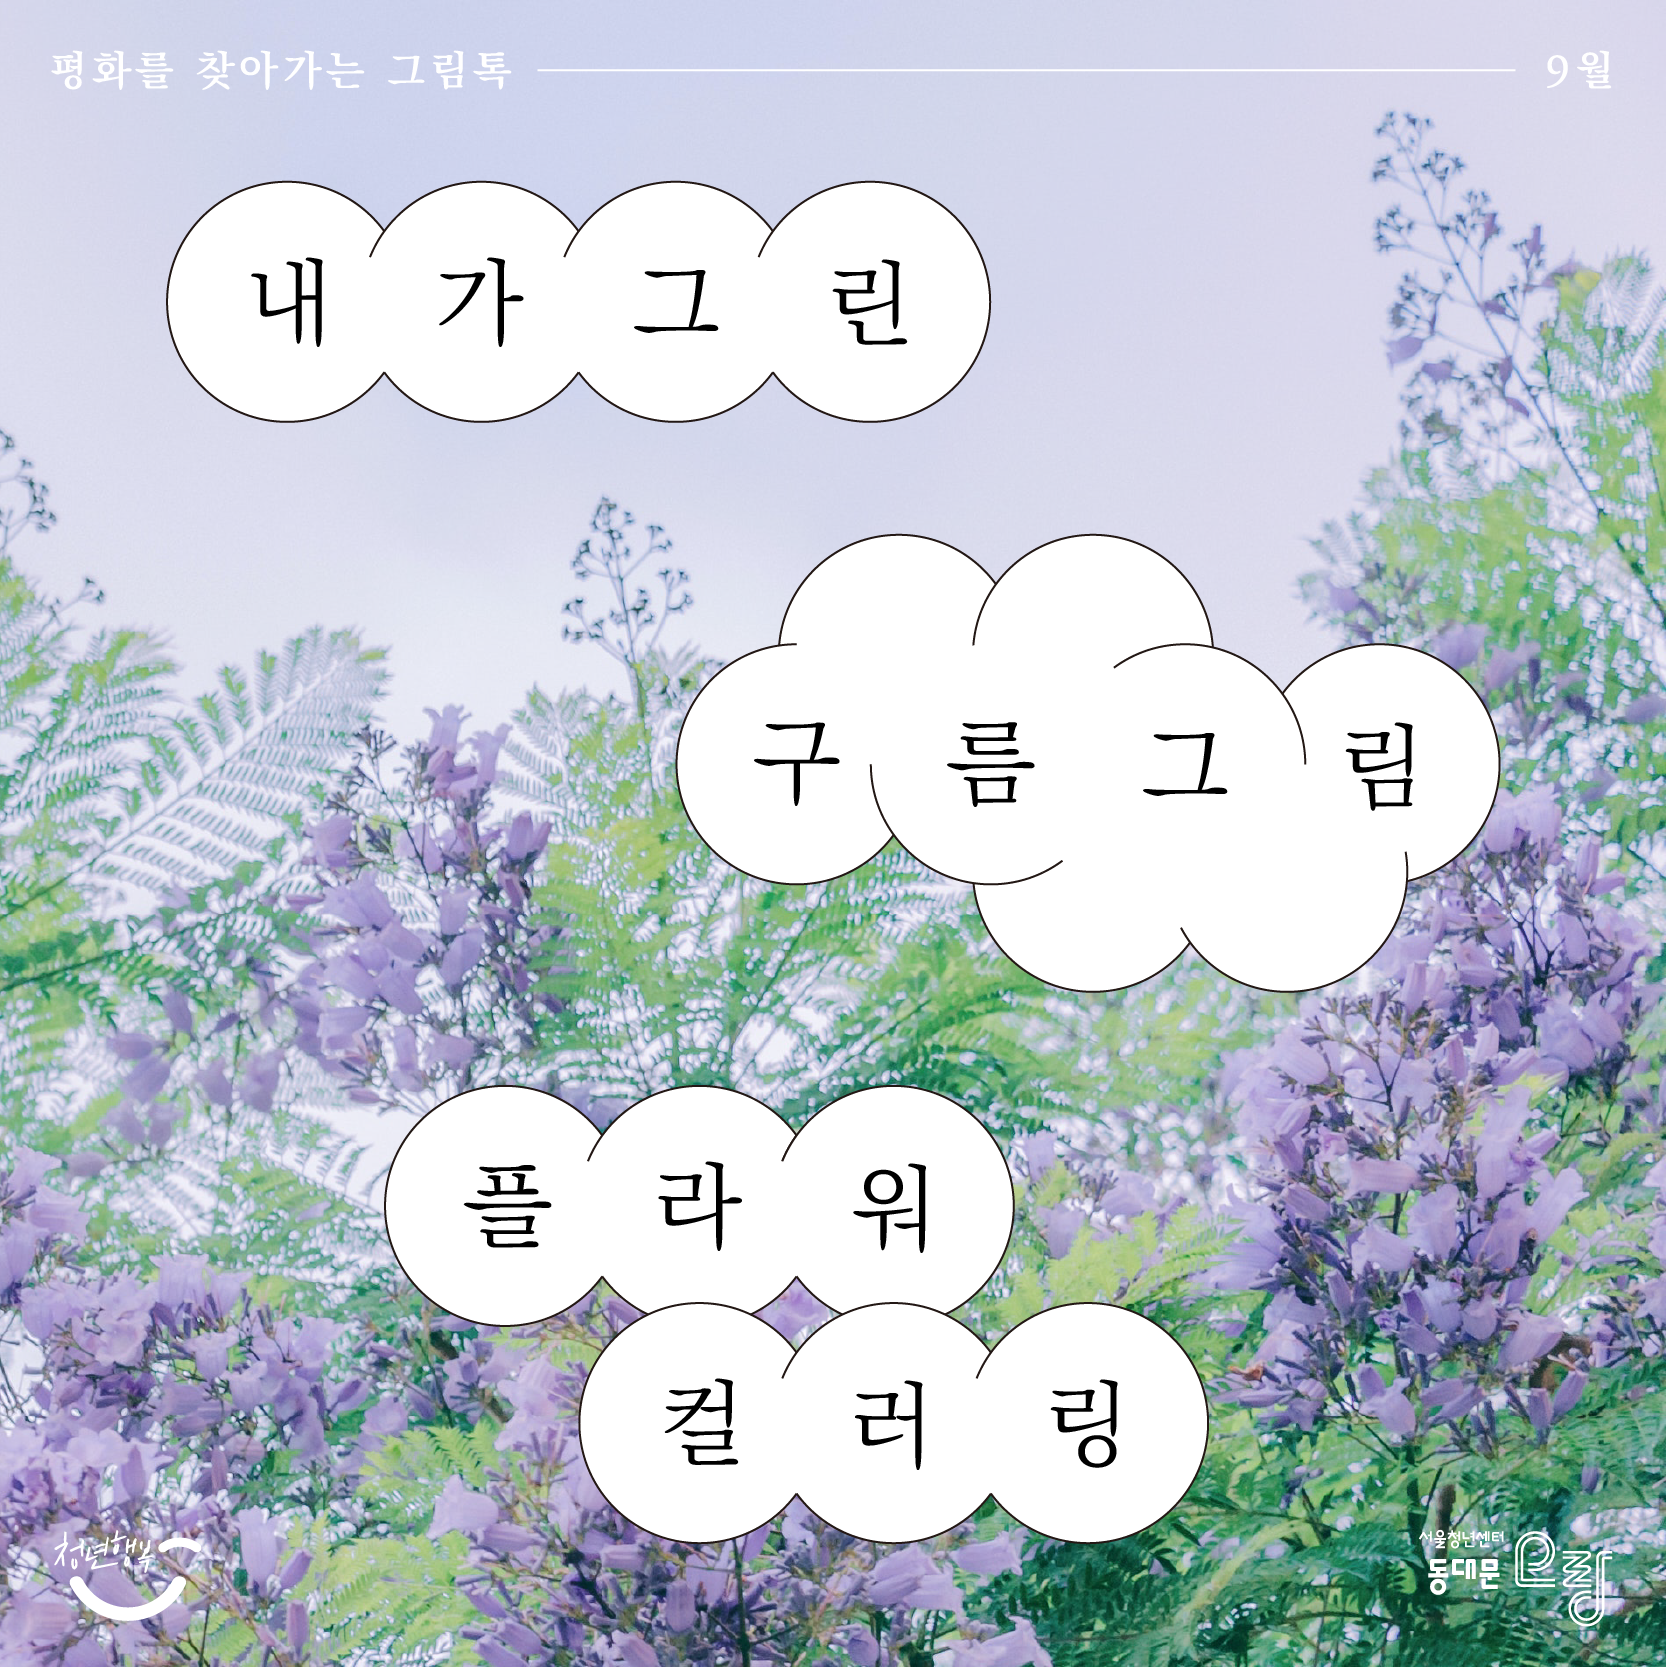 평화를 찾아가는 그림톡 - 9월 내가 그린 구름그림 / 플라워 컬러링 청년행복, 서울청년센터 동대문 오랑